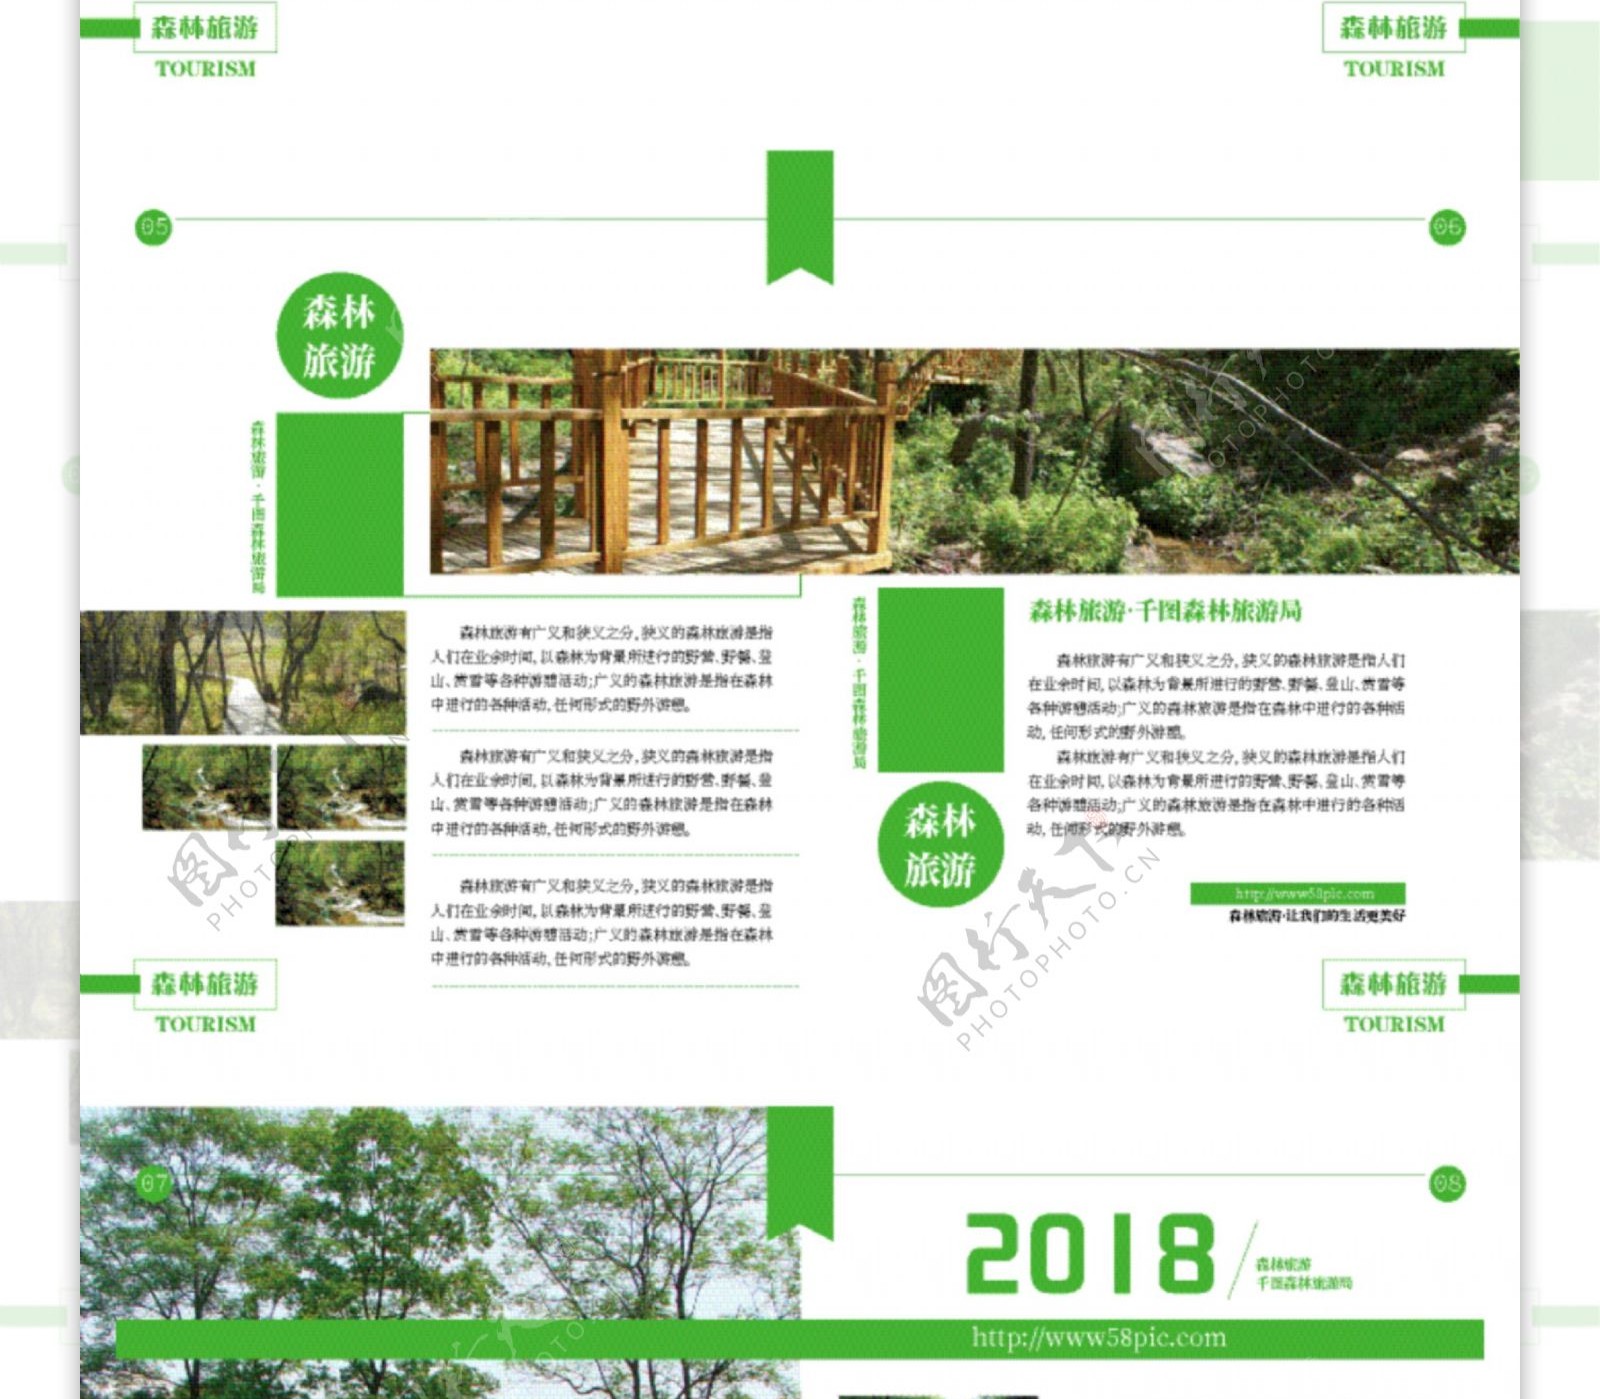 简约时尚绿色森林旅游画册设计ai模板